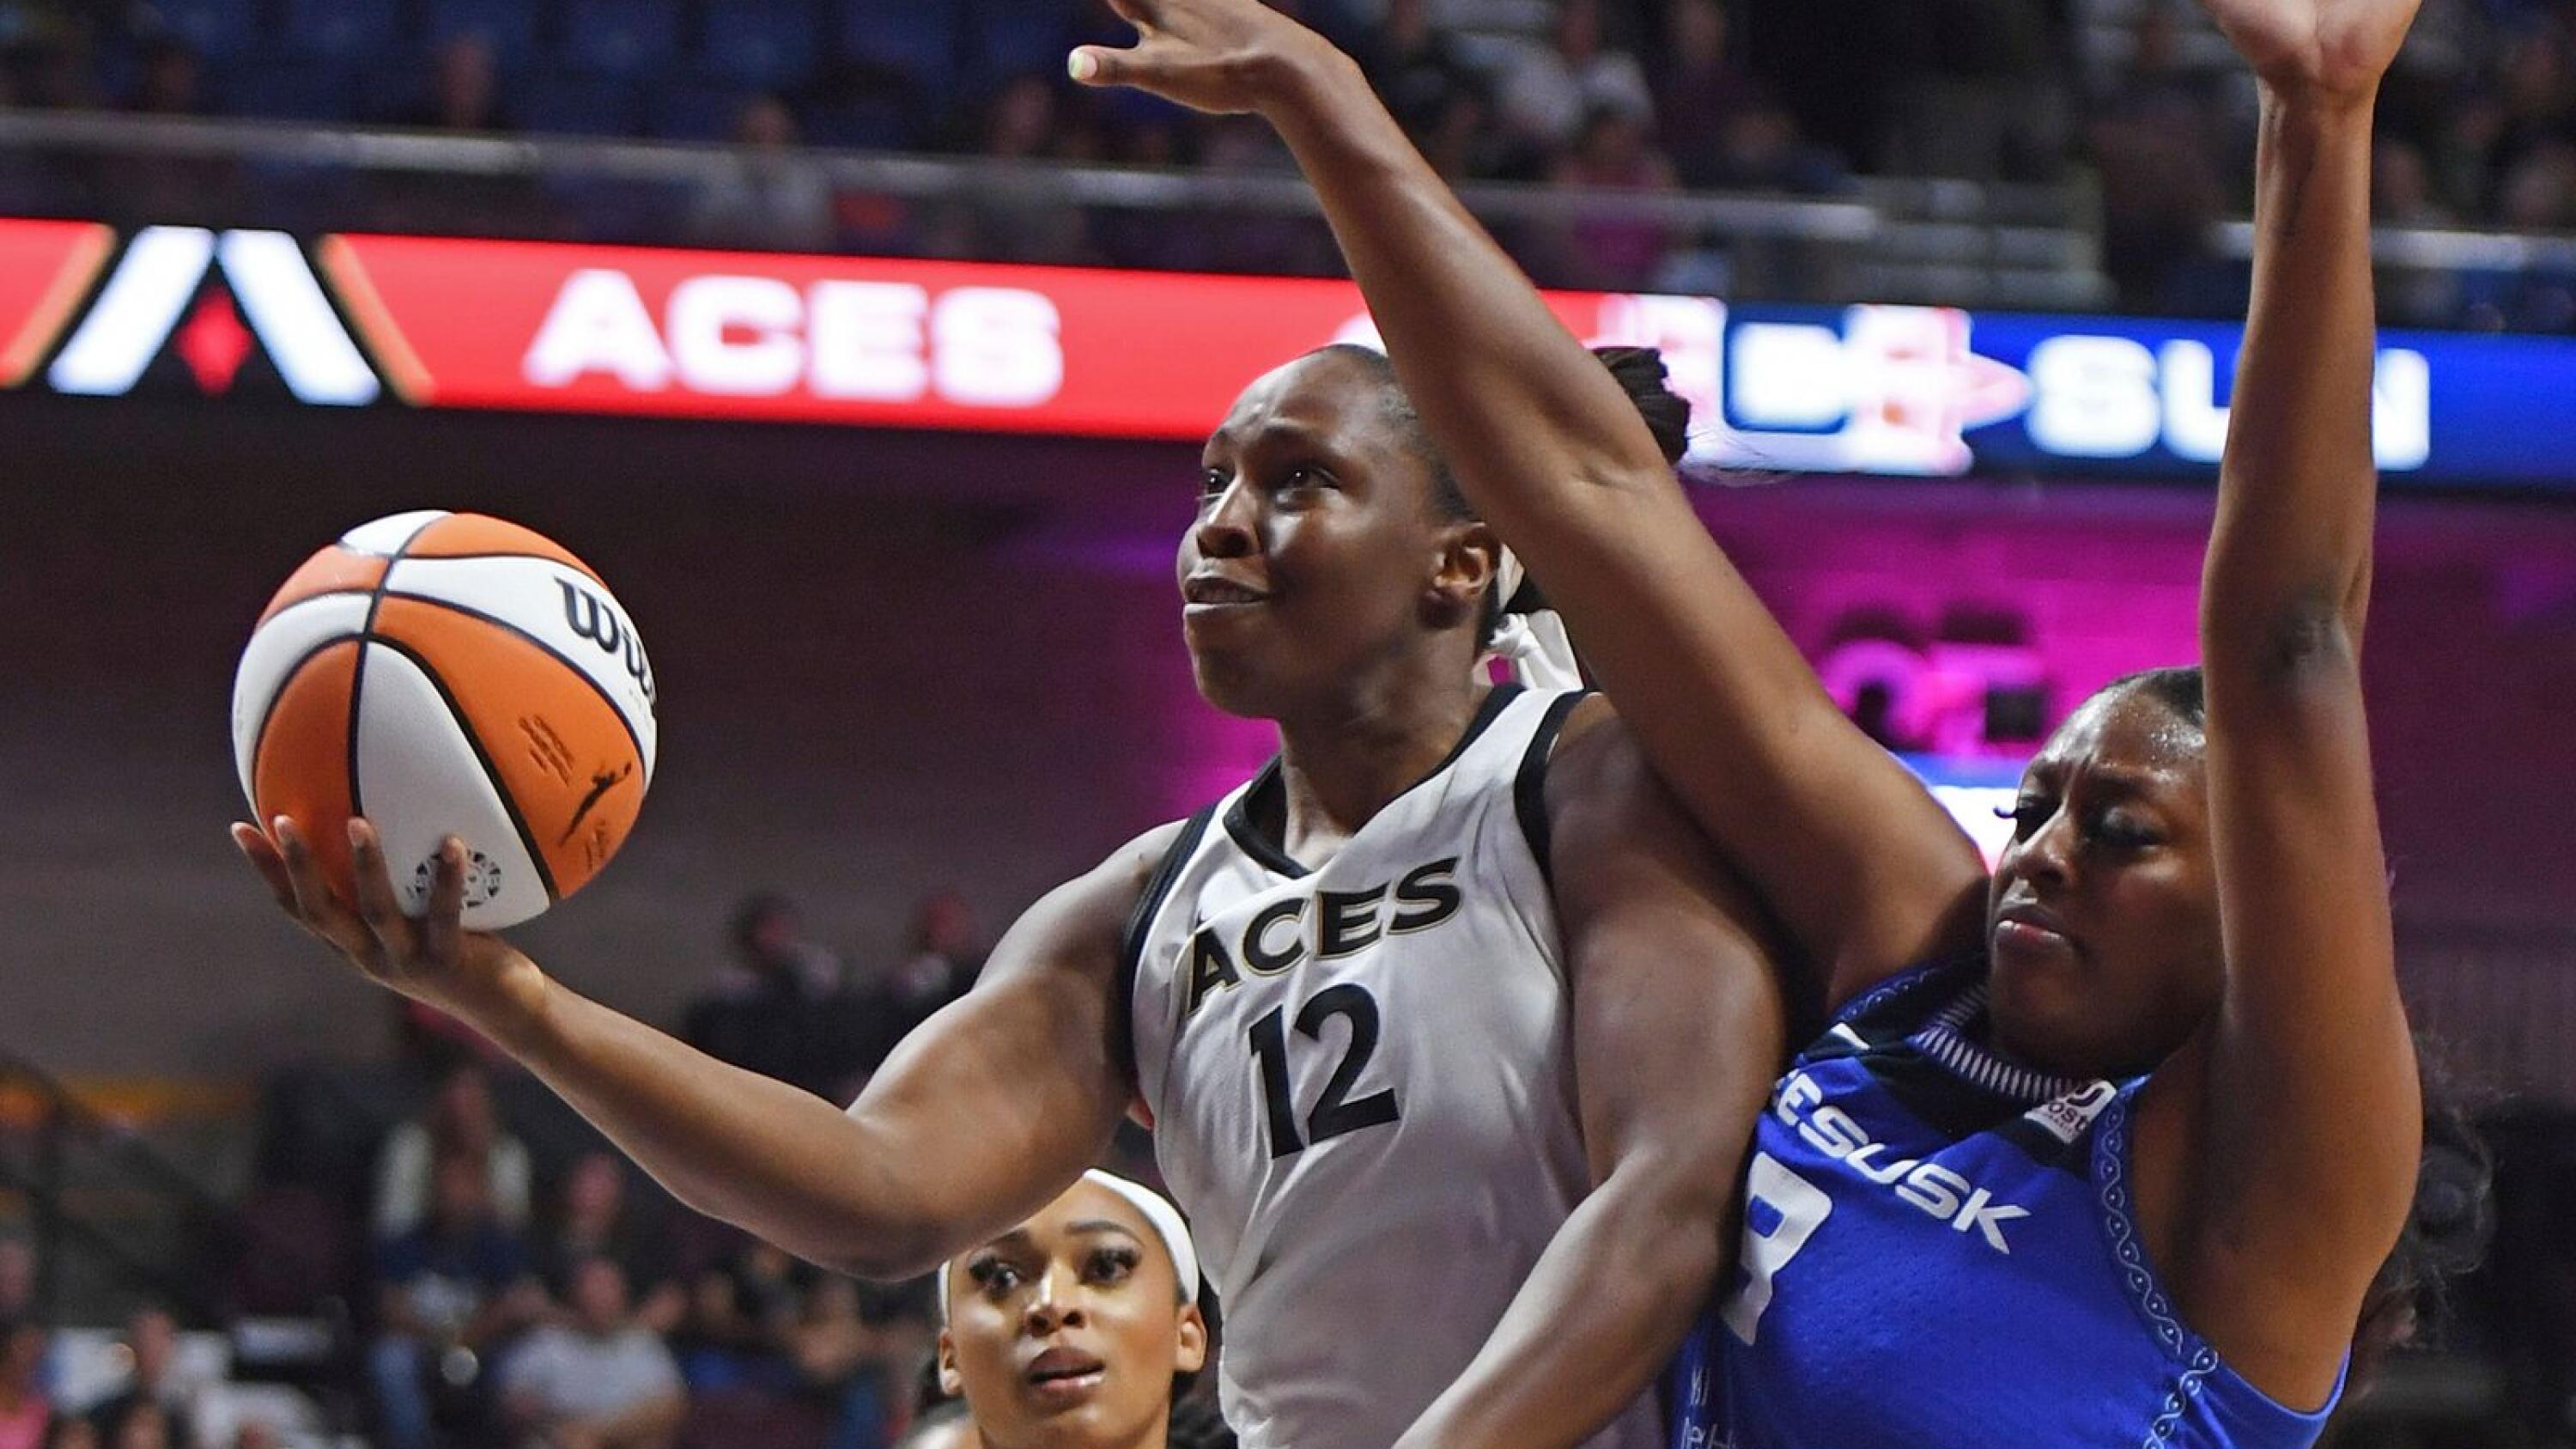 Around the WNBA: Las Vegas Aces have found winning ways again under Hammon